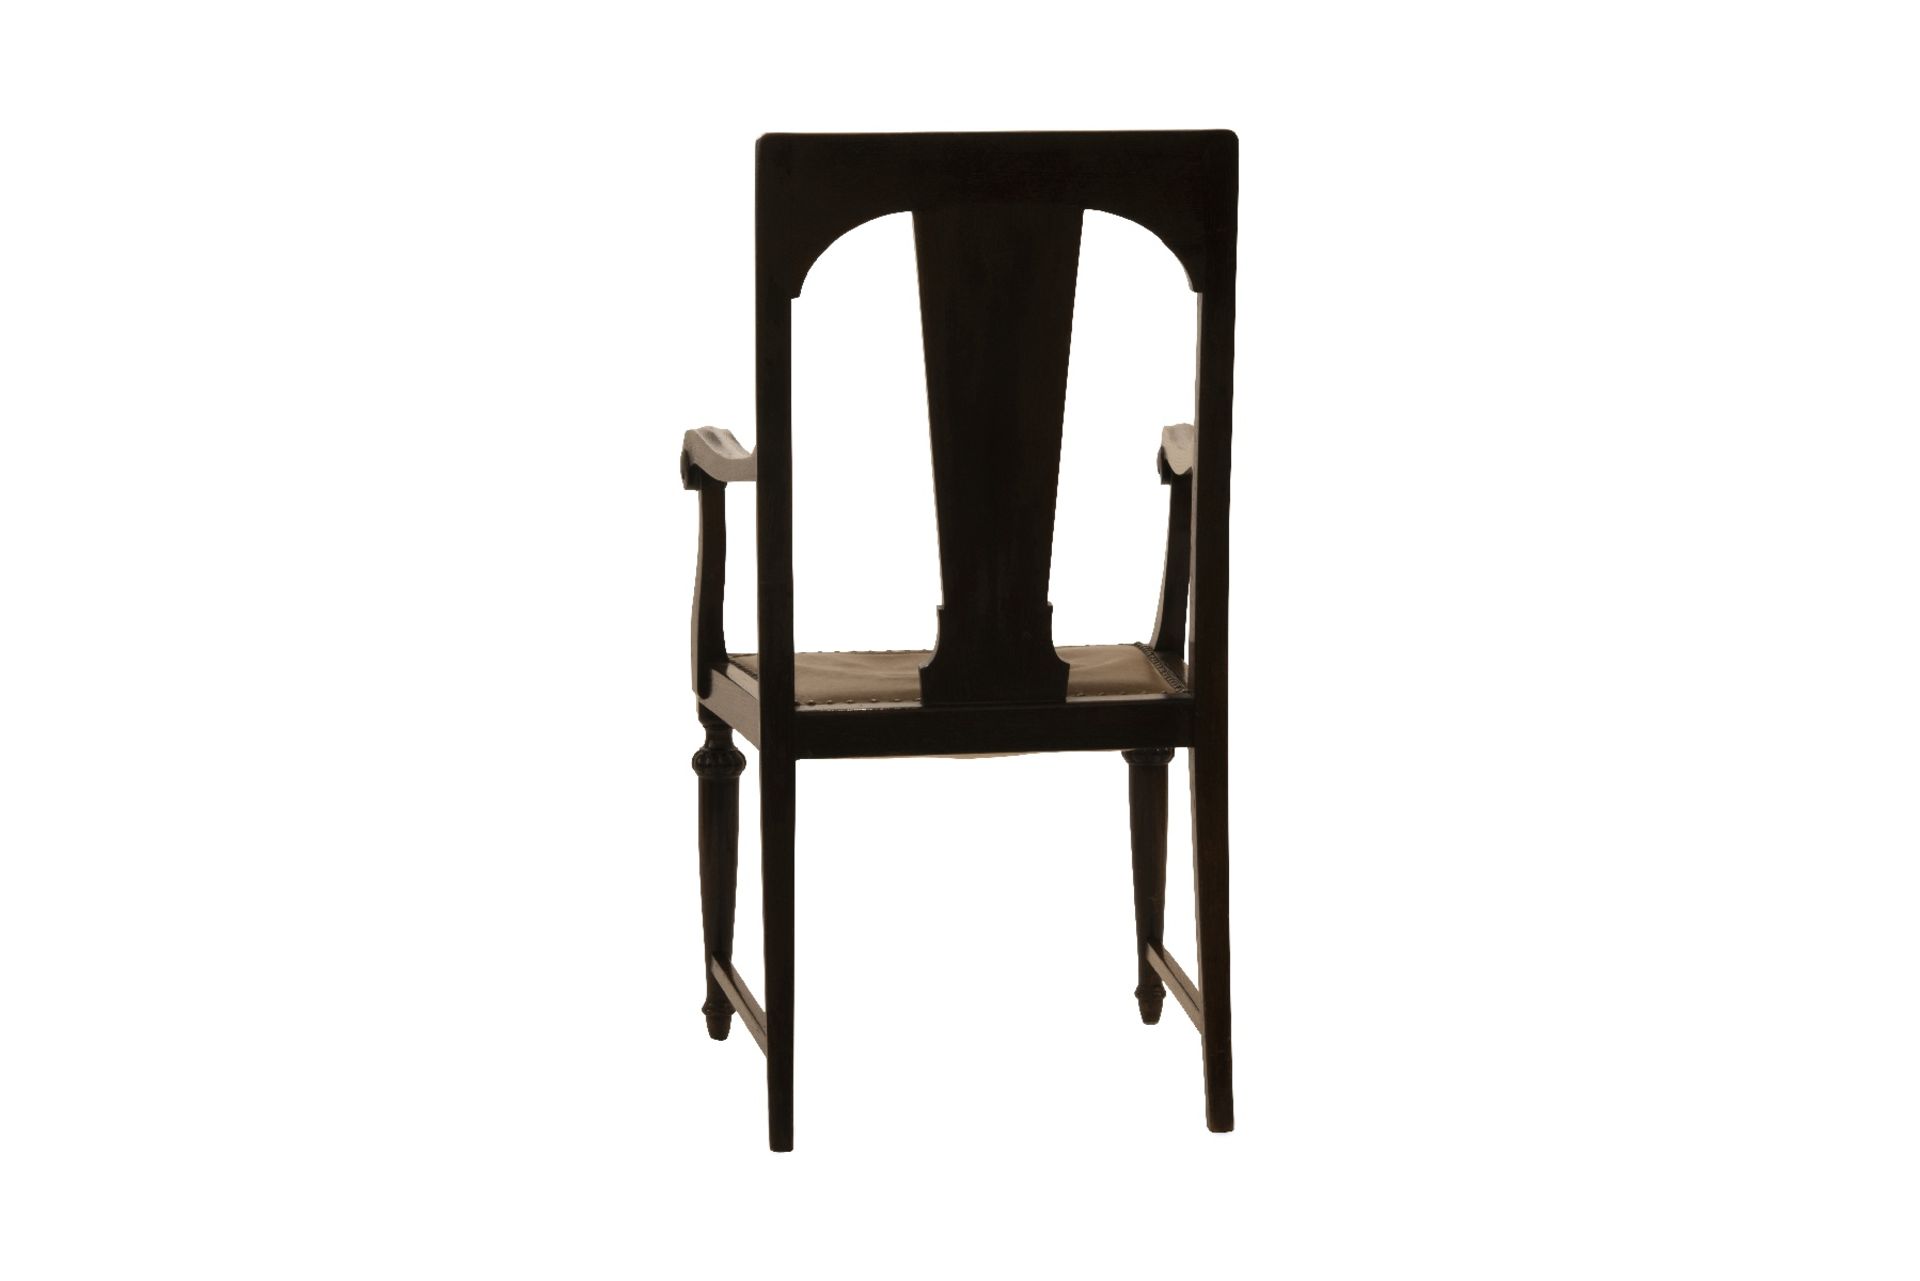 2 Armlehnstuehle mit Ledersitzflaeche | 2 Armchair with Leather Seat - Bild 3 aus 5